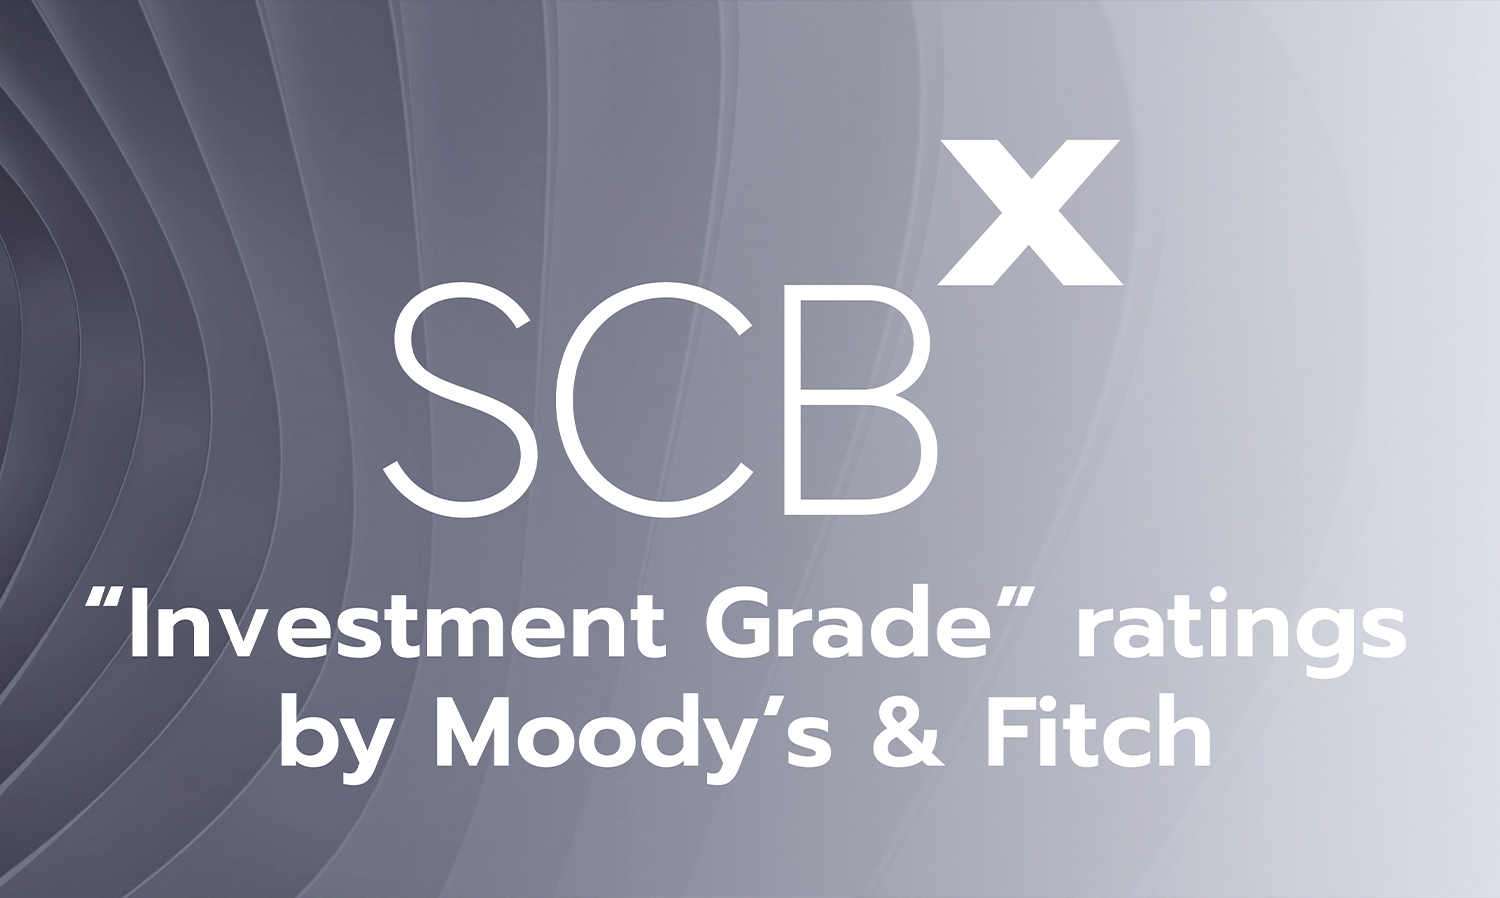 มูดี้ส์ และ ฟิทช์ จัดอันดับเครดิตเป็นครั้งแรกให้ เอสซีบี เอกซ์ ด้วยความน่าเชื่อถือระดับ Investment Grade สะท้อนความแข็งแกร่งในระดับสากล